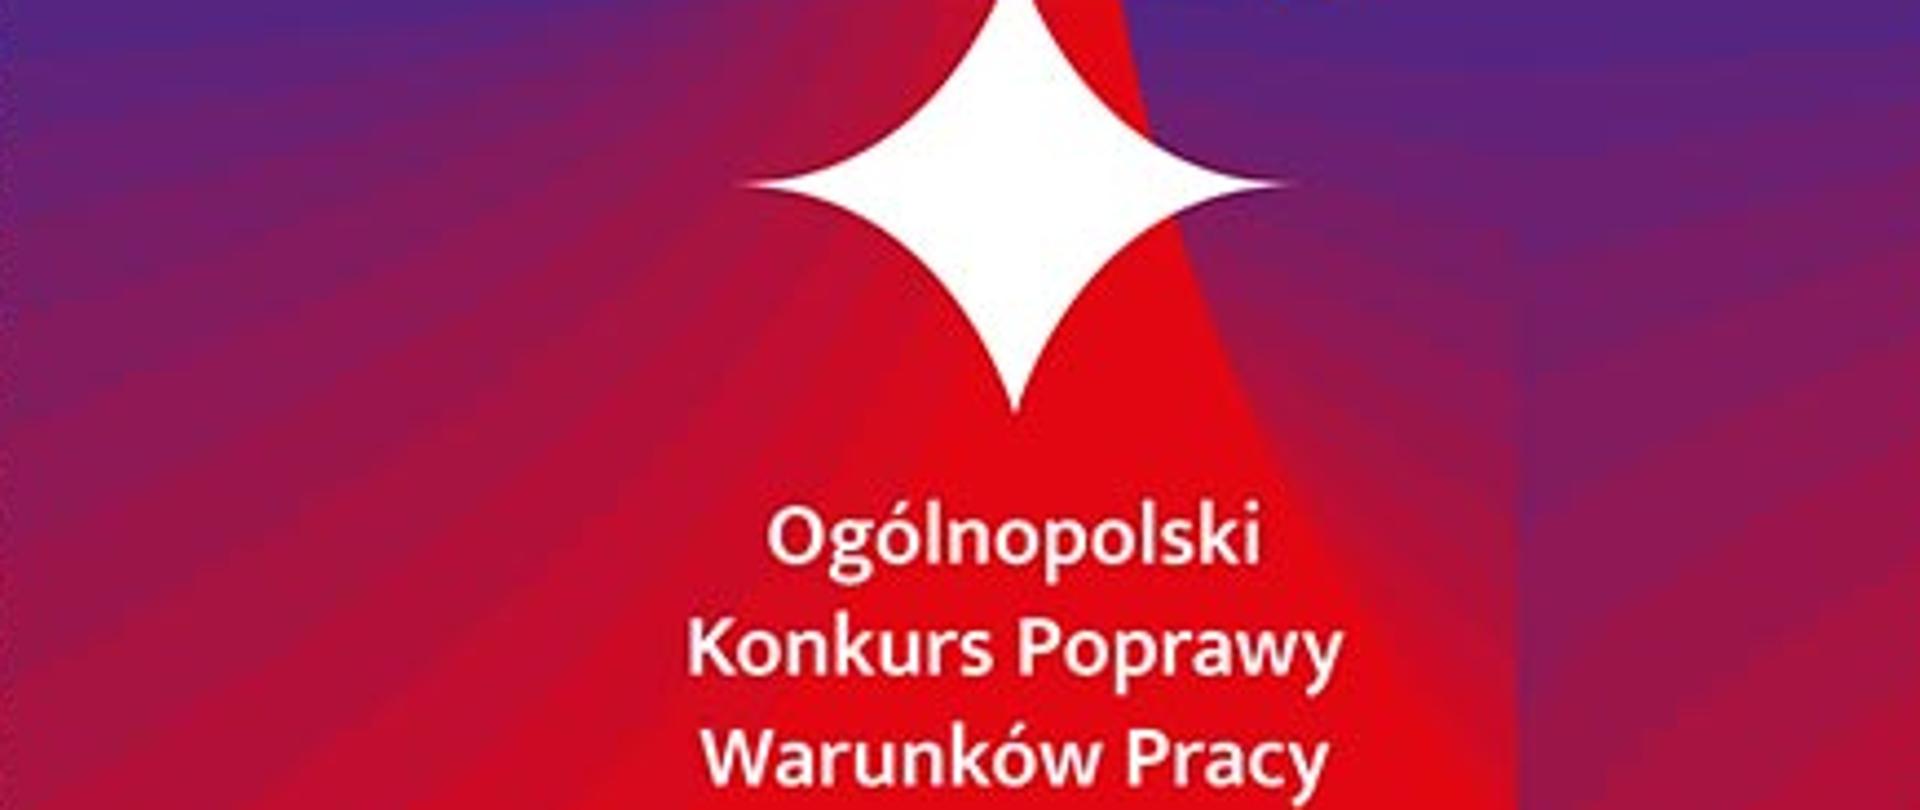 zdjęcie przedstawia informacje na temat Ogólnopolskiego Konkursu Poprawy Warunków Pracy